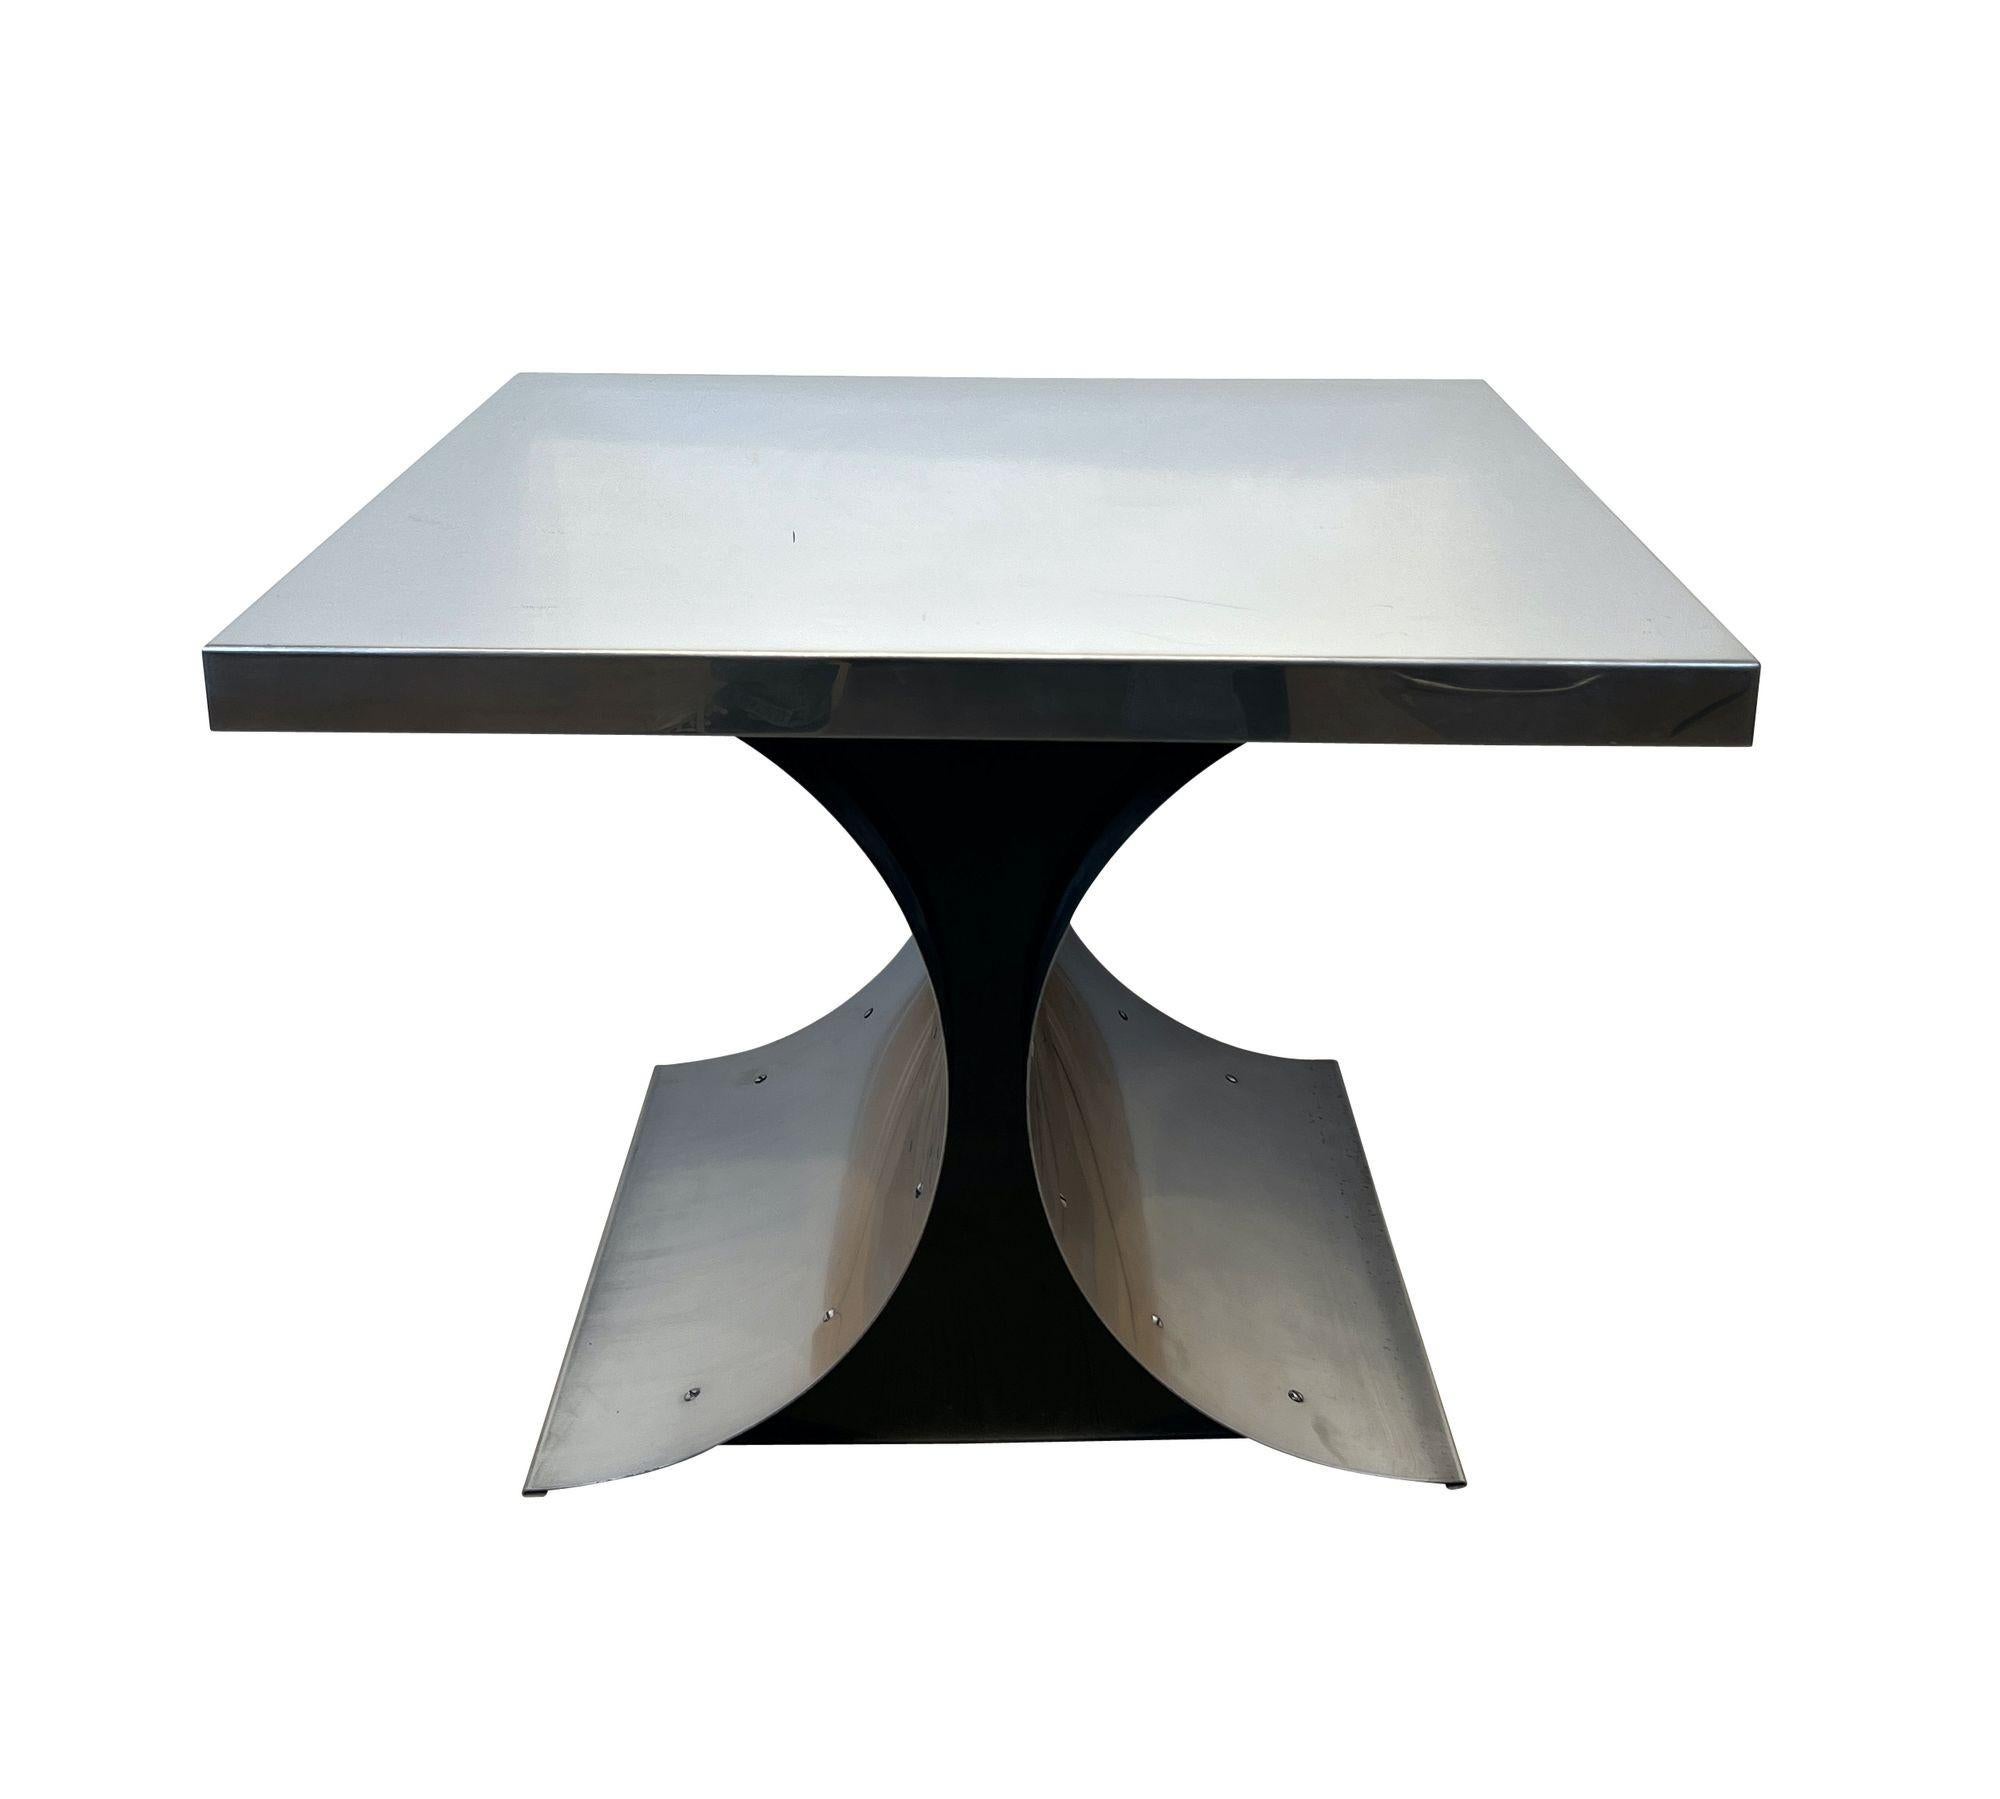 Canapé, table d'appoint ou table basse incurvée en acier inoxydable dans le style d'Oscar Niemeyer, provenant de Paris, France, vers les années 1960/70. Cadre en acier inoxydable brossé avec parties latérales laquées noires. Dessus en acier